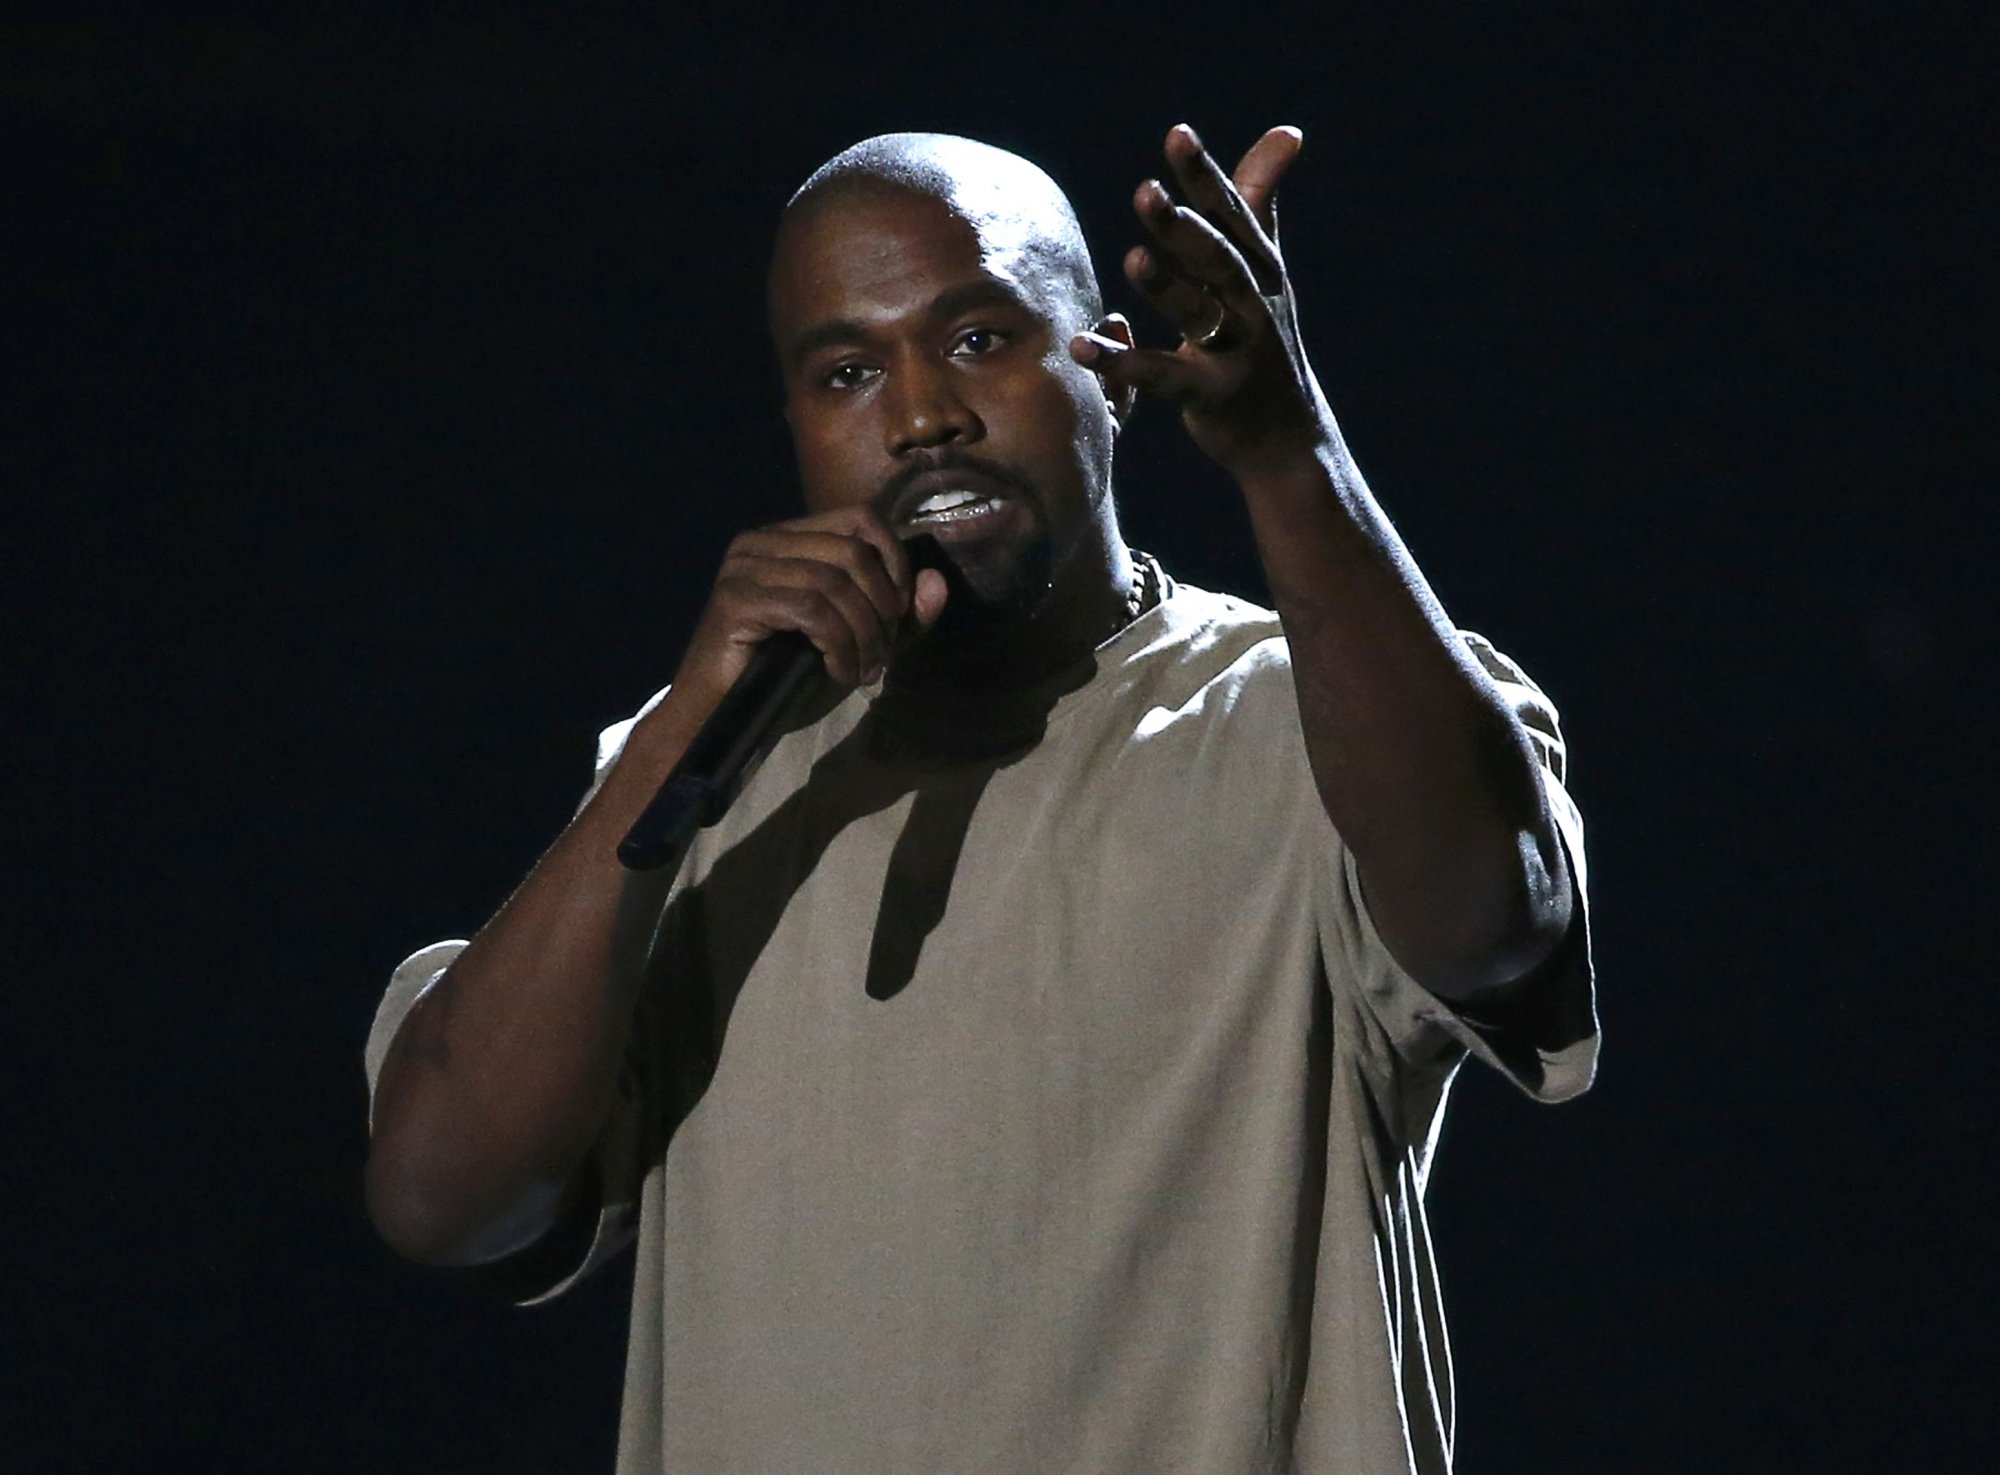 Μήνυσε για σεξουαλική παρενόχληση τον Kanye West – Τα χυδαία μηνύματα